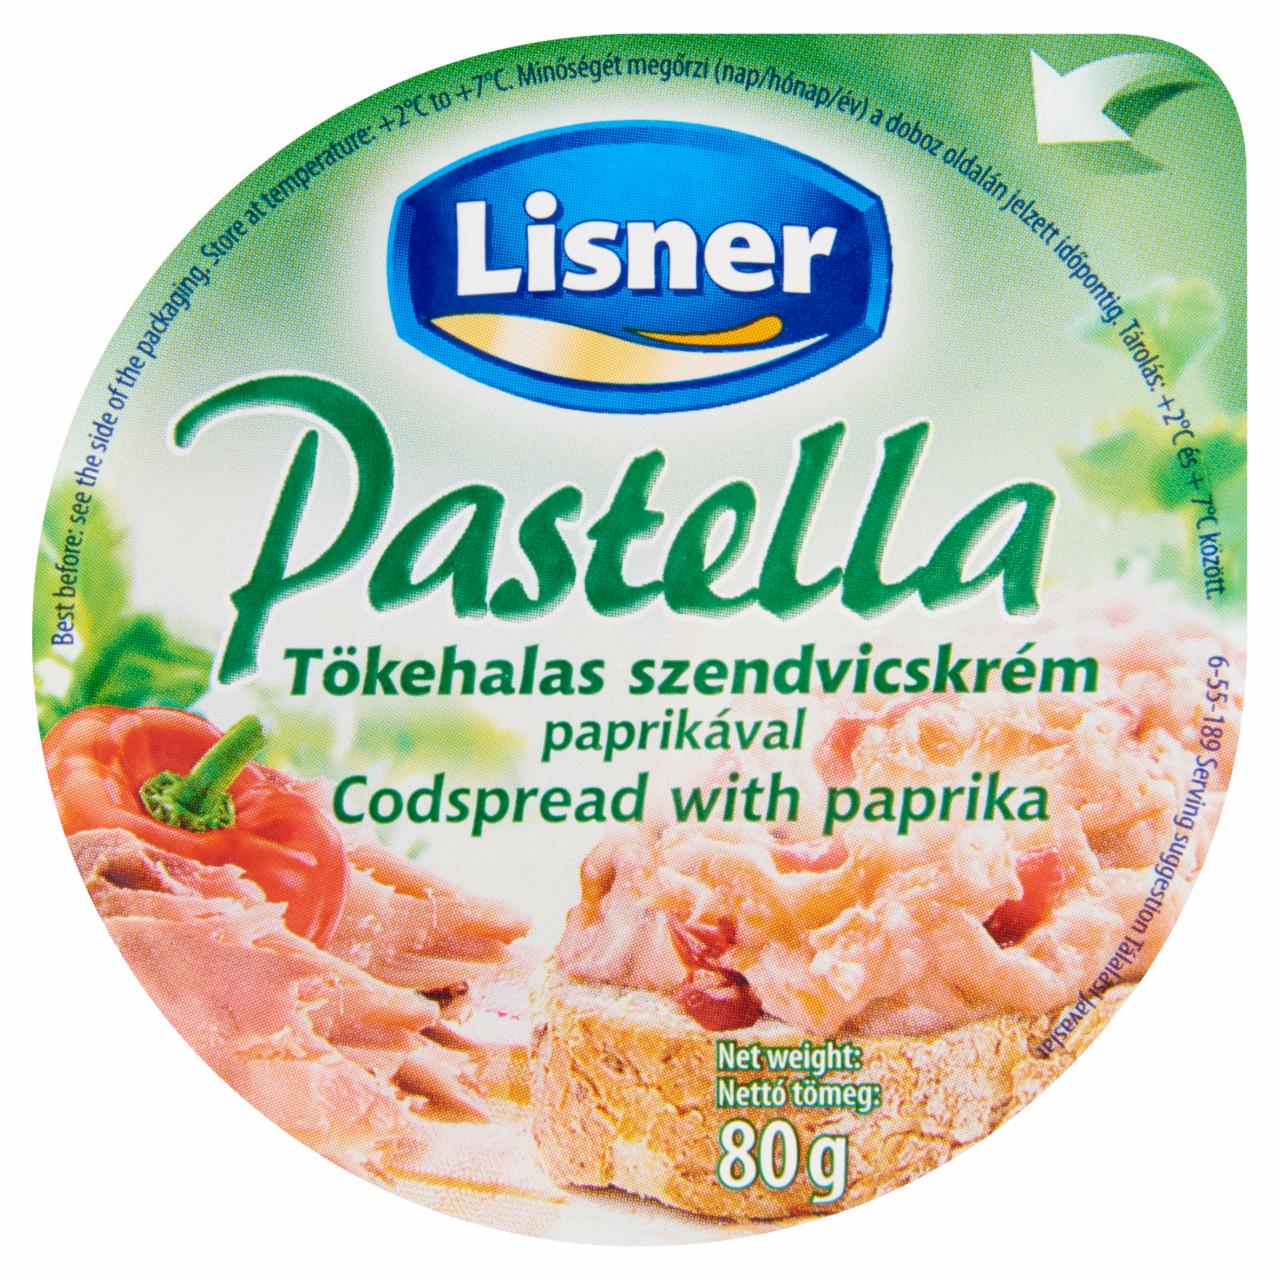 Képek - Lisner Pastella tőkehalas szendvicskrém paprikával 80 g